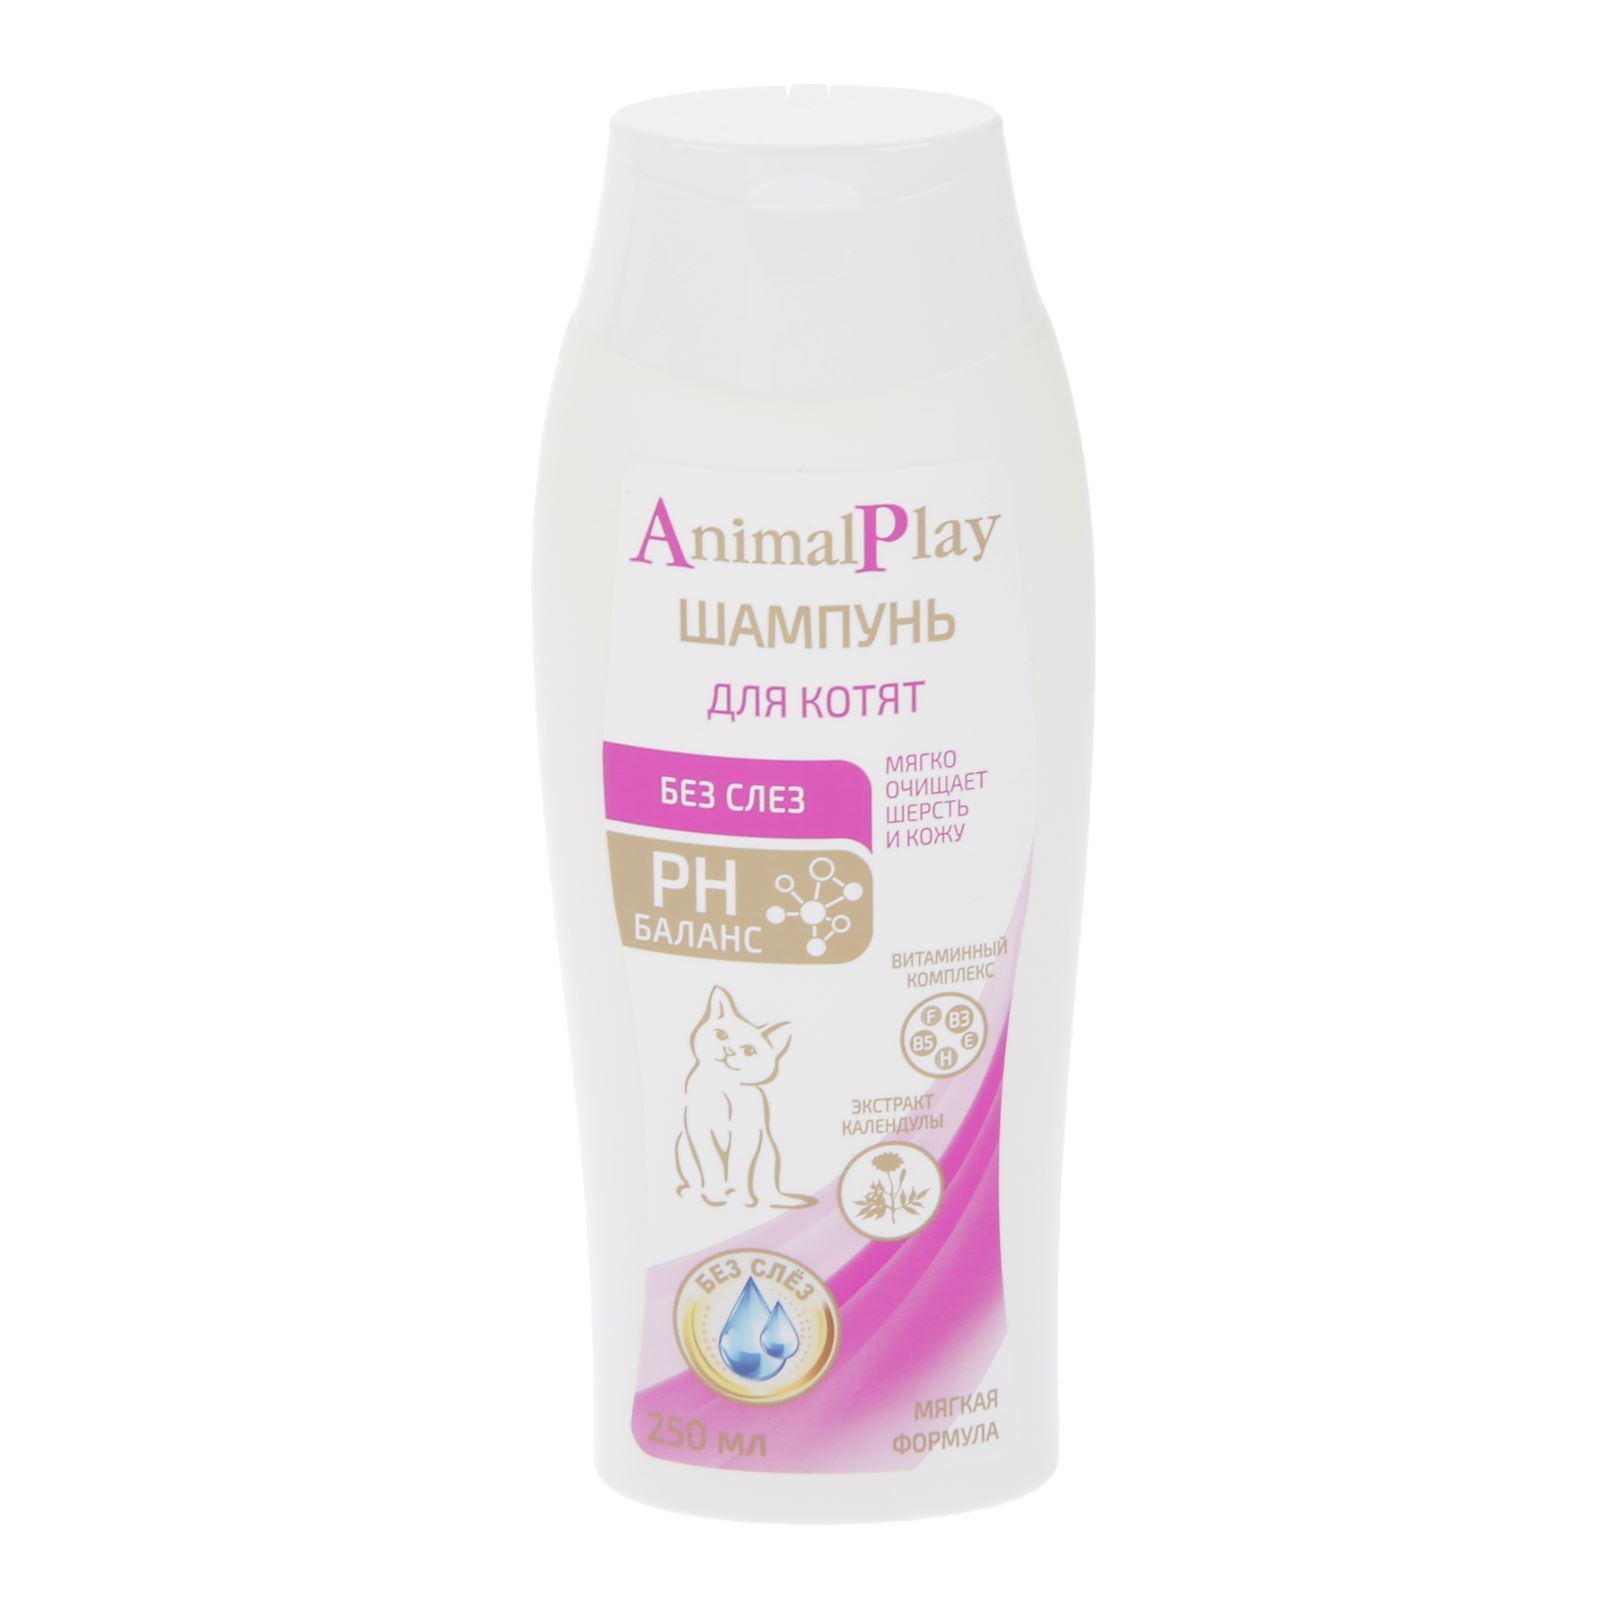 Шампунь для котят Animal Play Без слез, с витаминами и экстрактом календулы, 250 мл